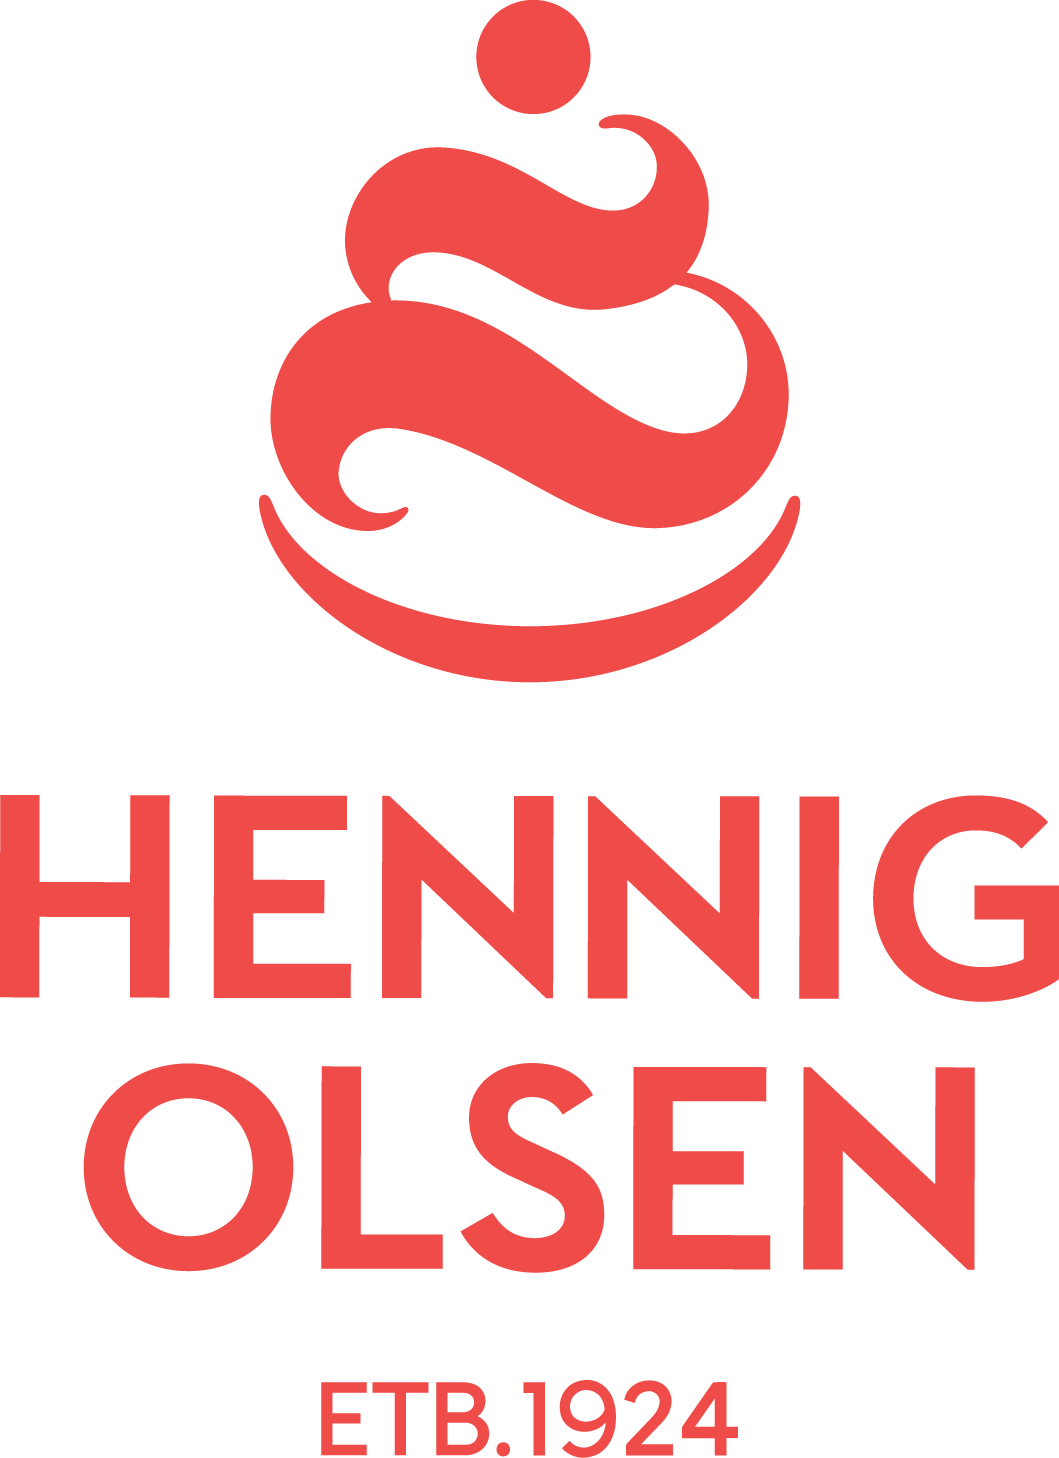 HENNIG-OLSEN IS AS